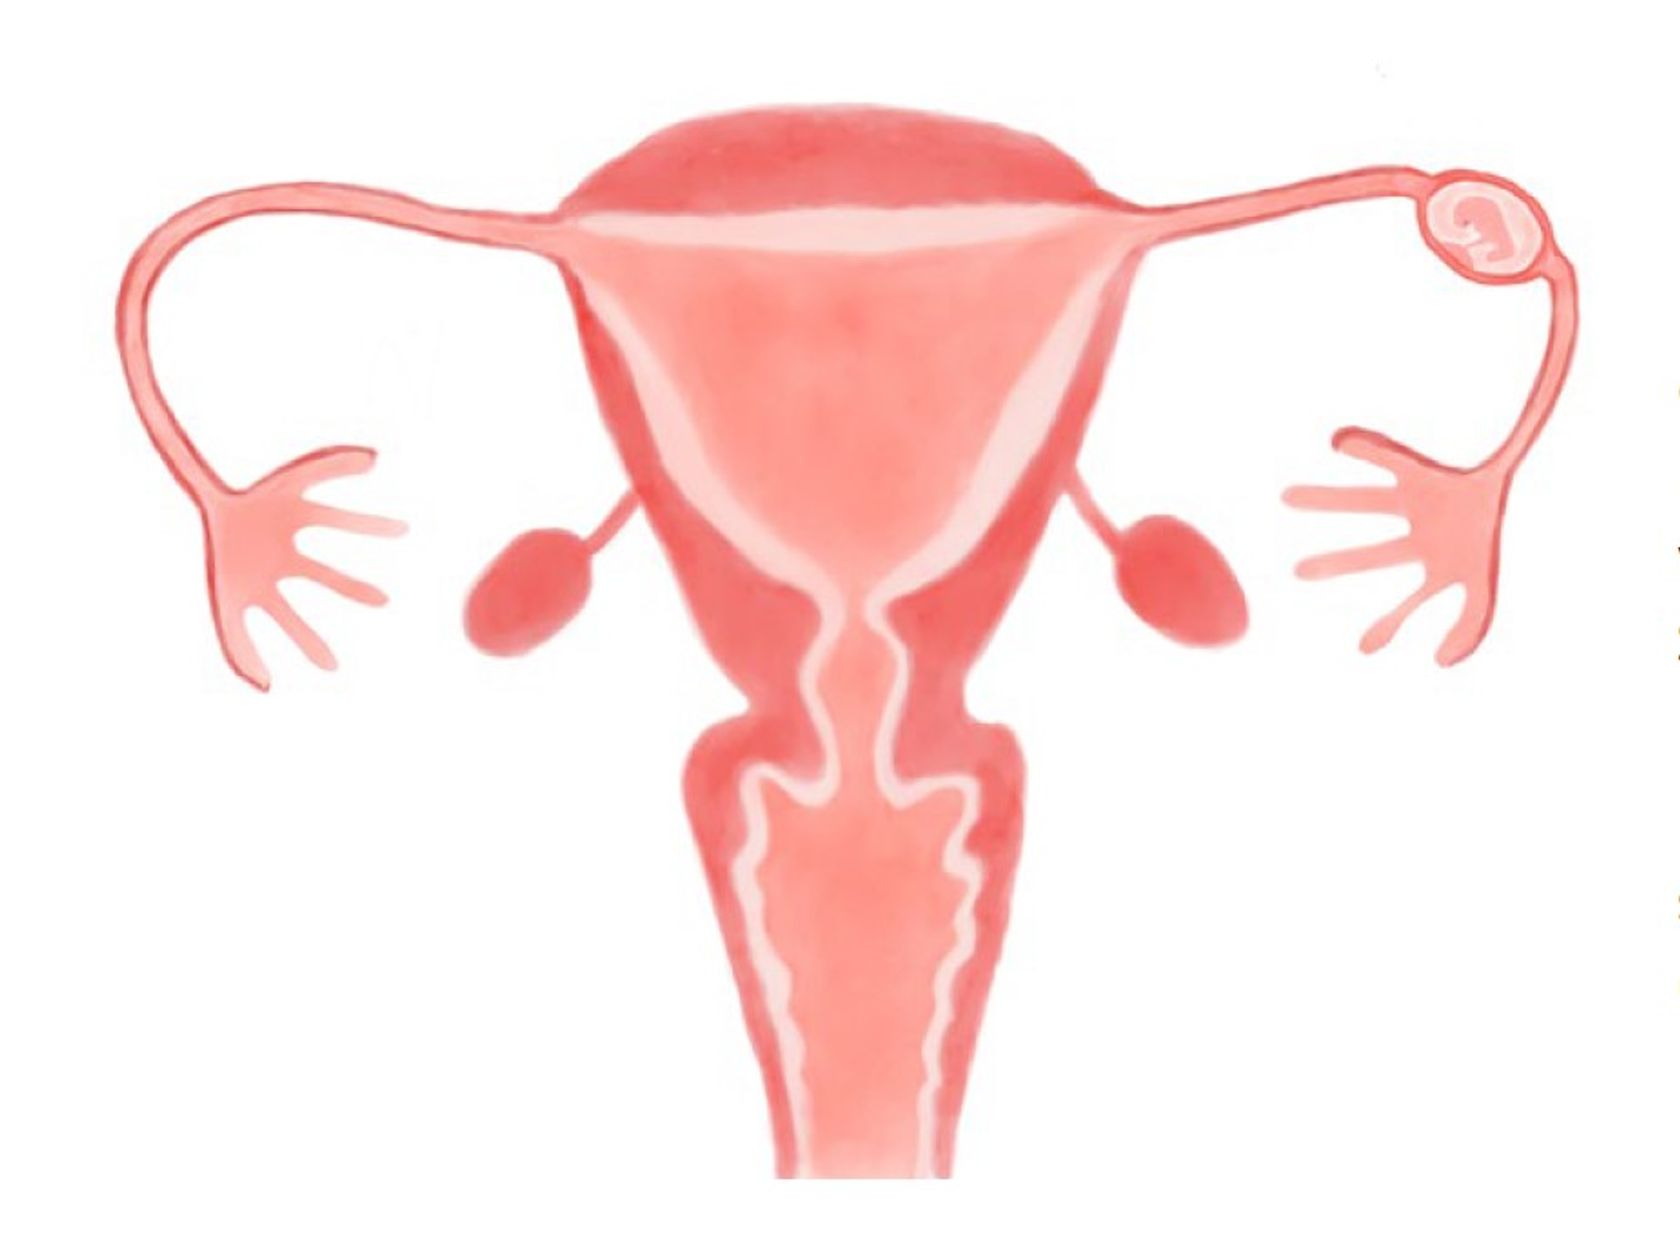 Illustration einer Eileiterschwangerschaft, der Embryo hat sich im Eileiter eingenistet.